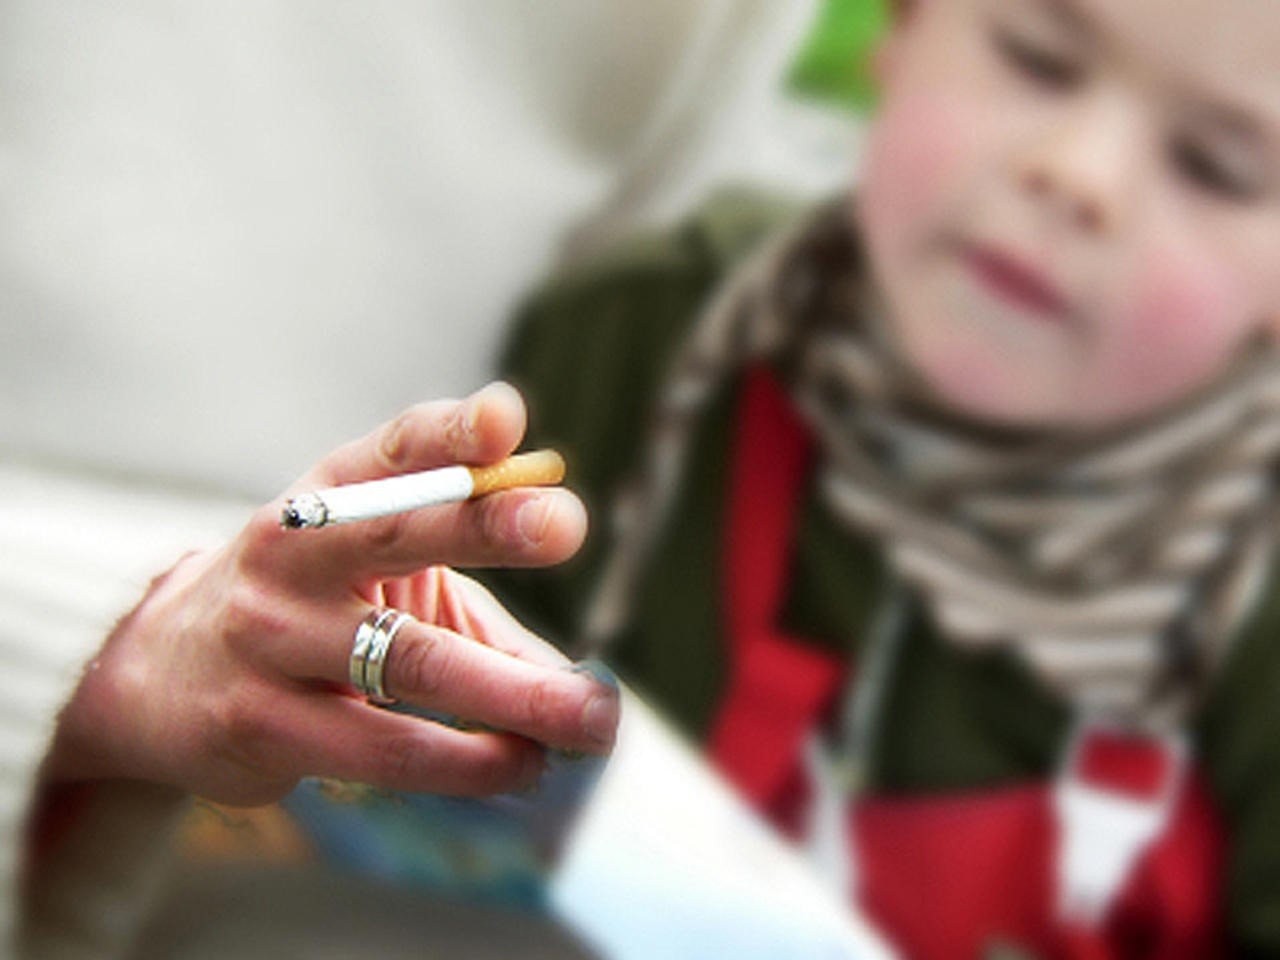 Khói thuốc lá có thể tăng nguy cơ viêm tai giữa ở trẻ.